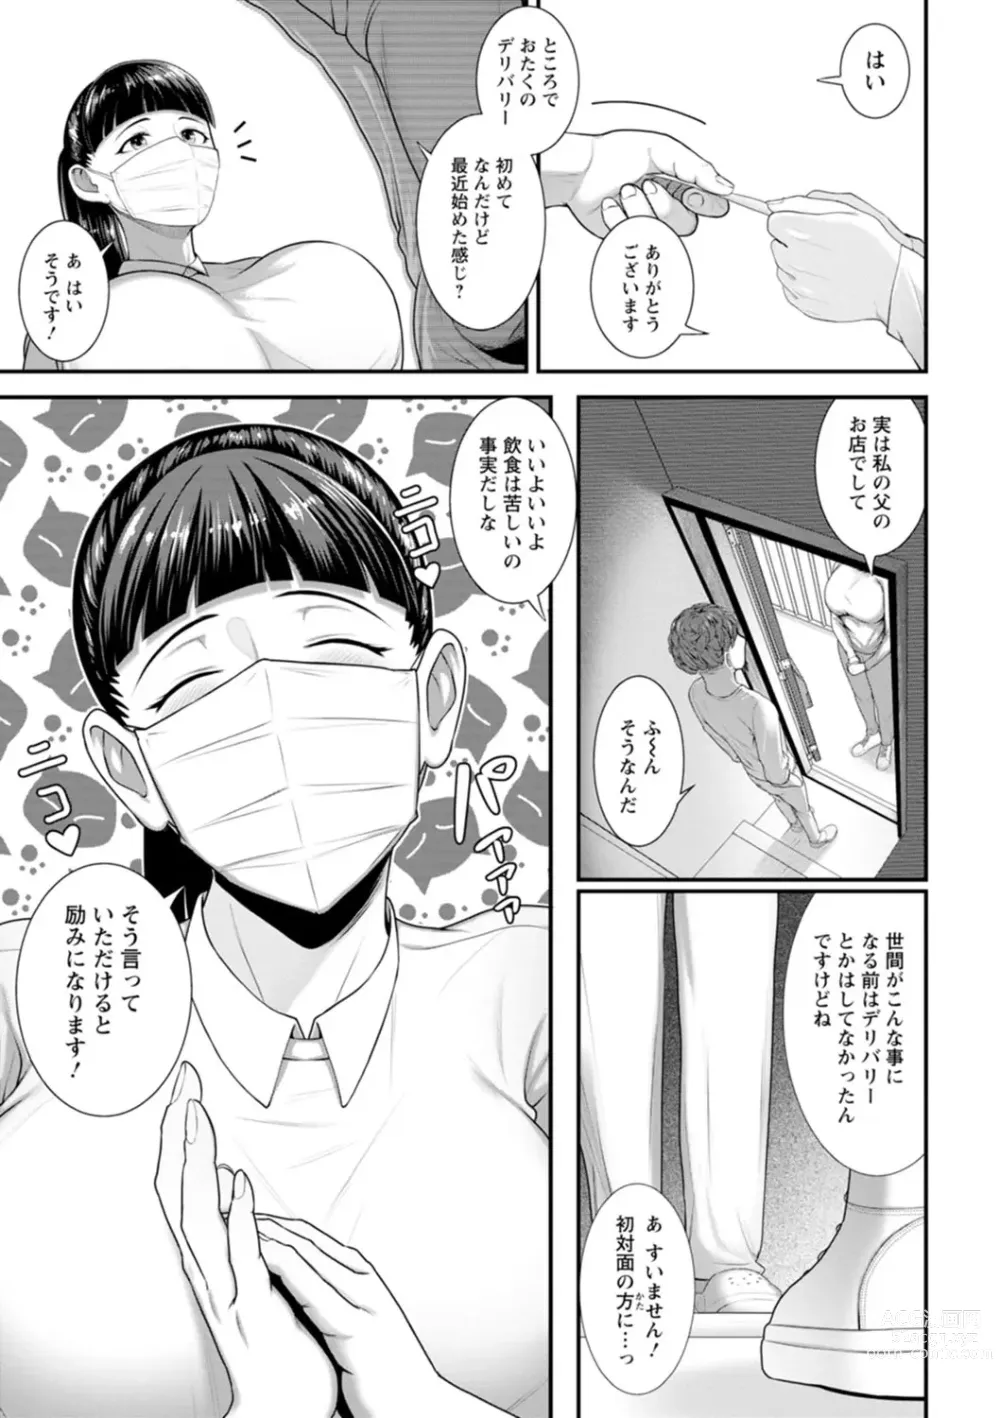 Page 31 of manga Sugao no kimi o okashitai